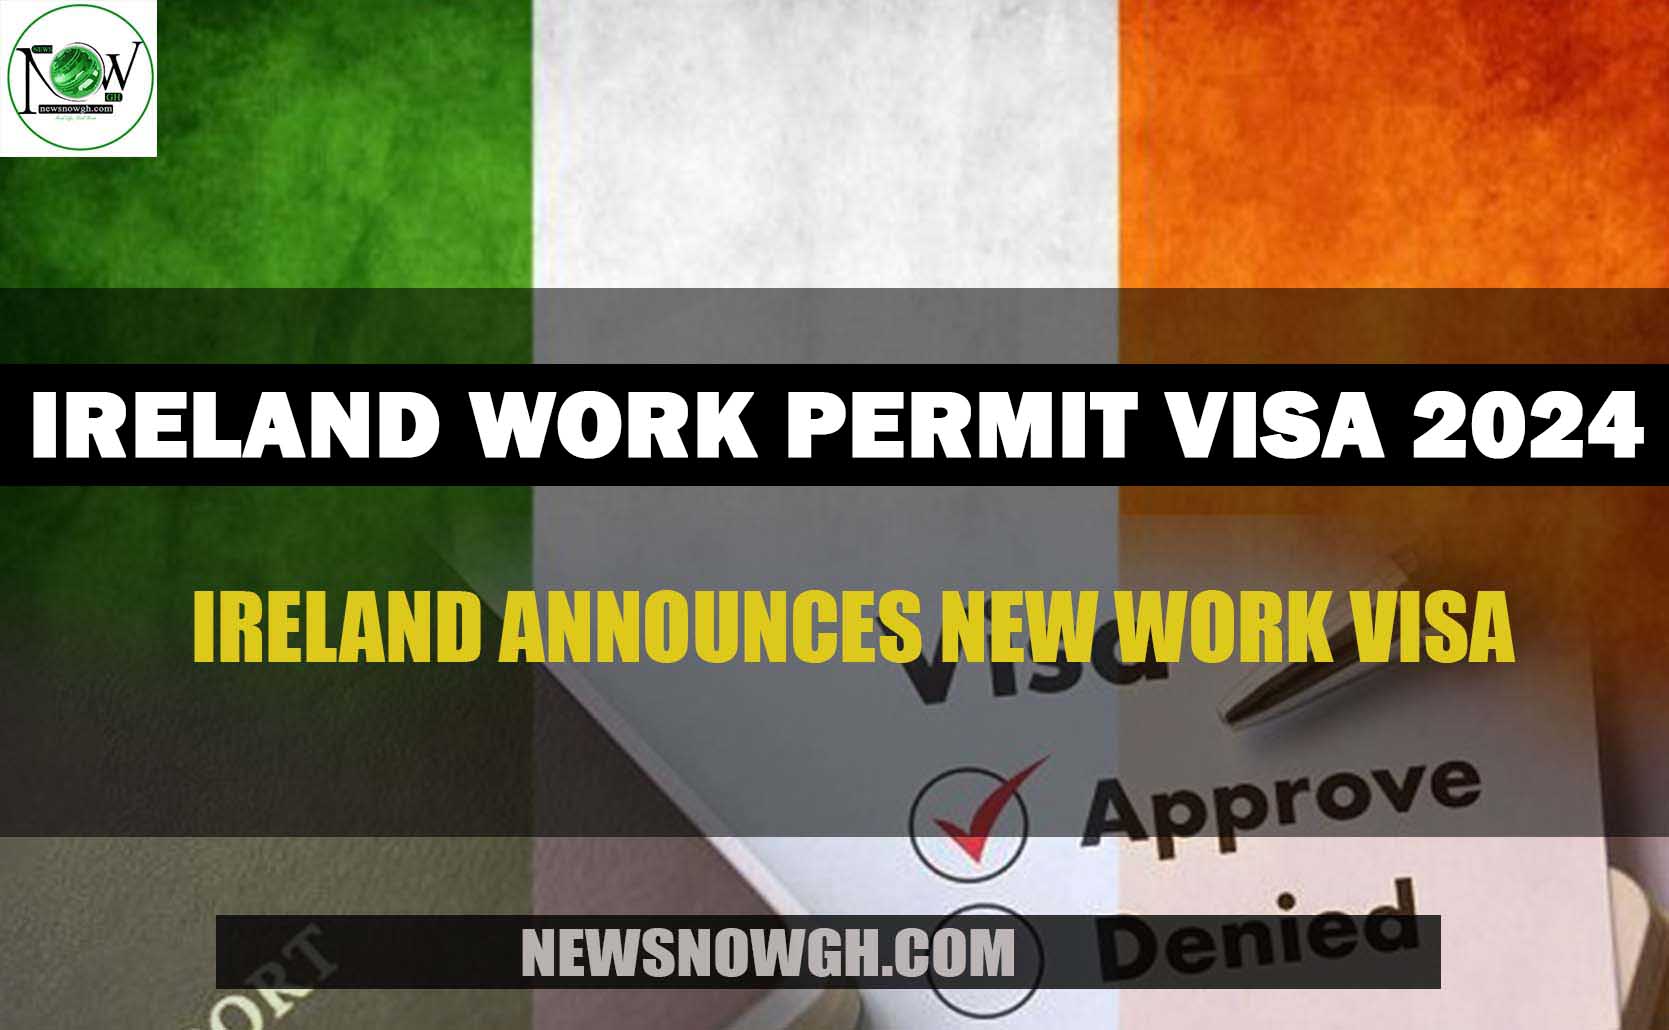 Ireland Work Permit Visa 2024 